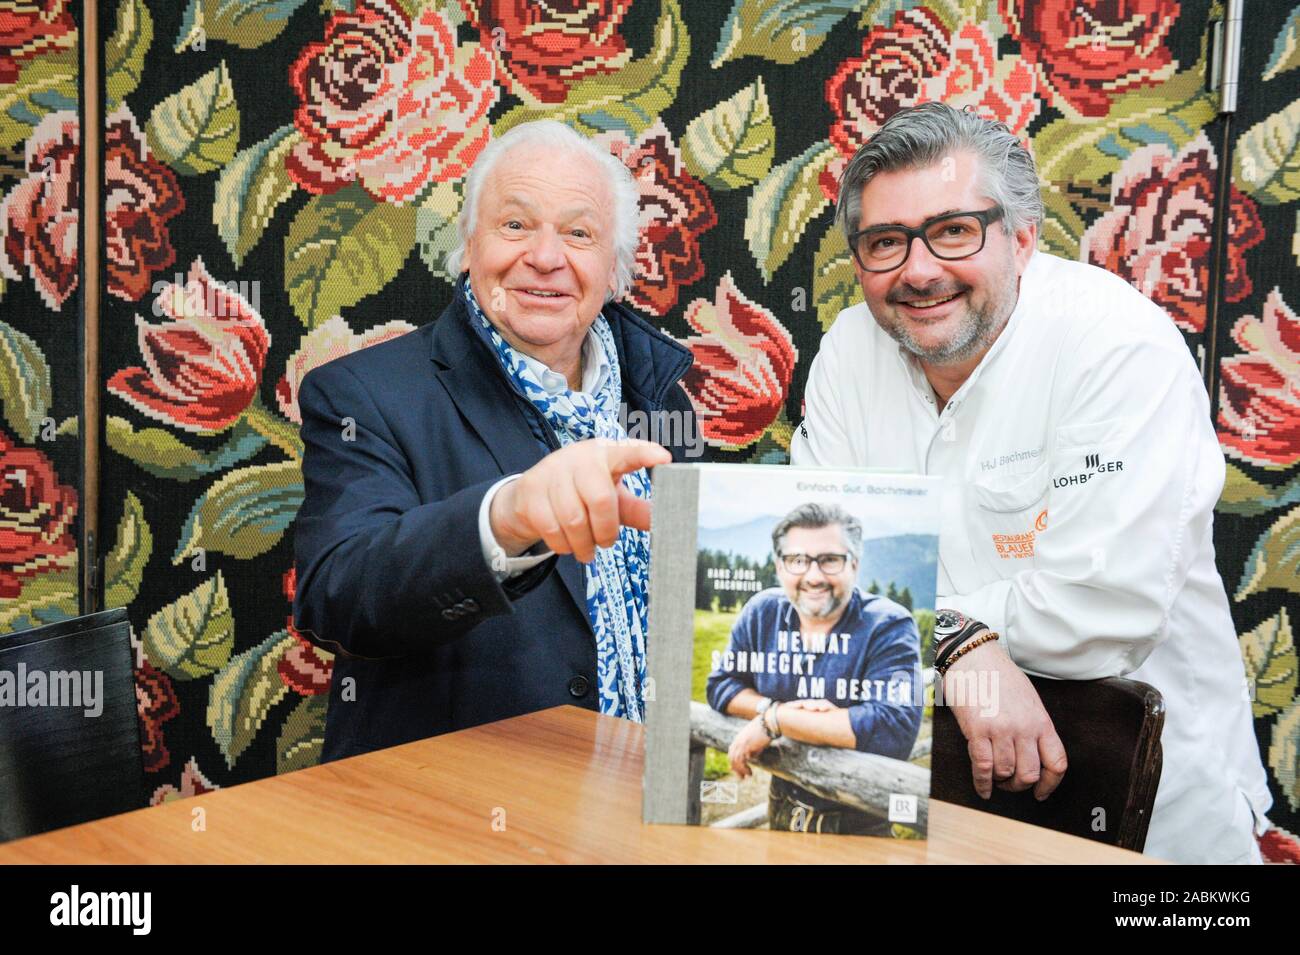 Plat chef et chef, Hans Jörg Bachmeier (à droite) présente son nouveau livre 'Heimat schmeckt am besten' ('Home meilleur goût') au restaurant Blauer Bock sur Munich's Reichenbachstraße 13. Star chef Eckart Witzigmann (l.) est également présente. [Traduction automatique] Banque D'Images